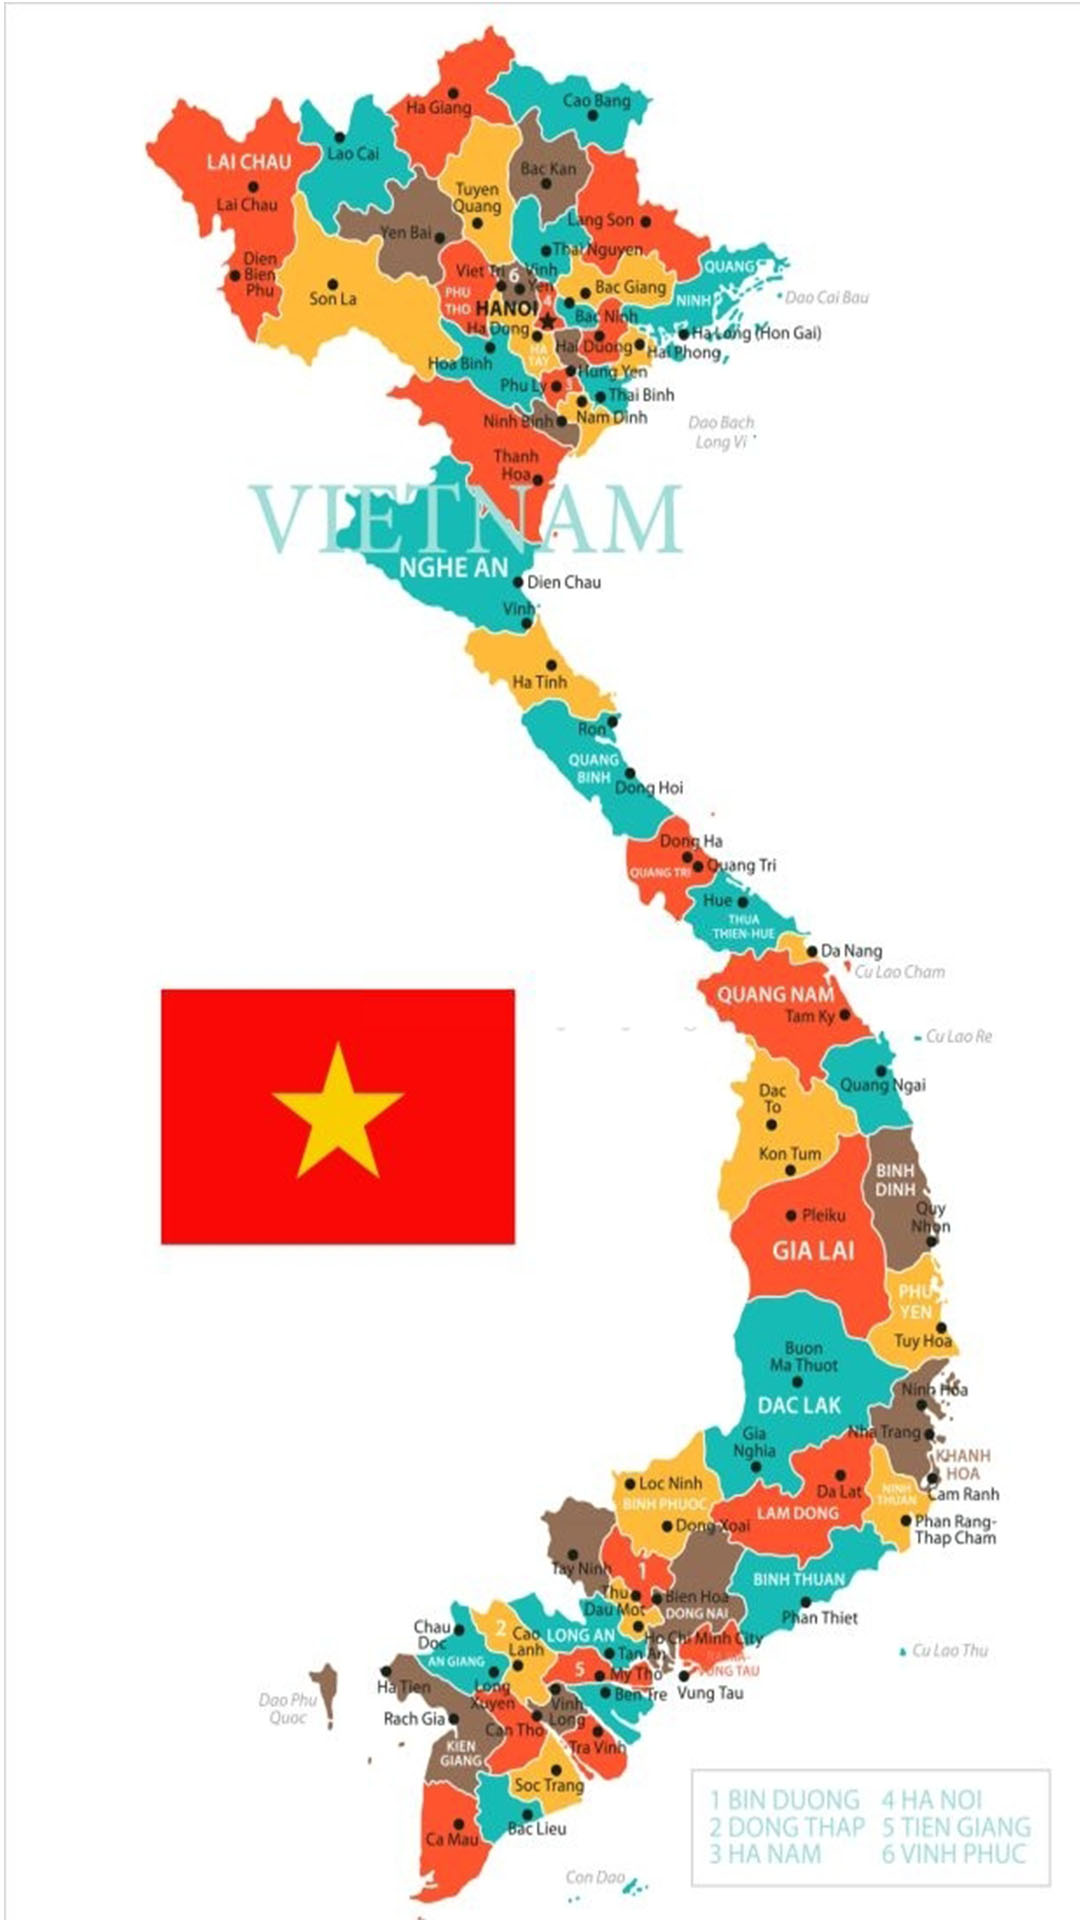 Cùng tận hưởng vẻ đẹp và ý nghĩa sâu sắc đằng sau cờ Việt Nam với hình nền cờ đầy màu sắc, sáng tạo và hoàn hảo. Hãy dành vài giây để ngắm nhìn và cảm nhận niềm tự hào và lòng yêu nước mãnh liệt của mình.